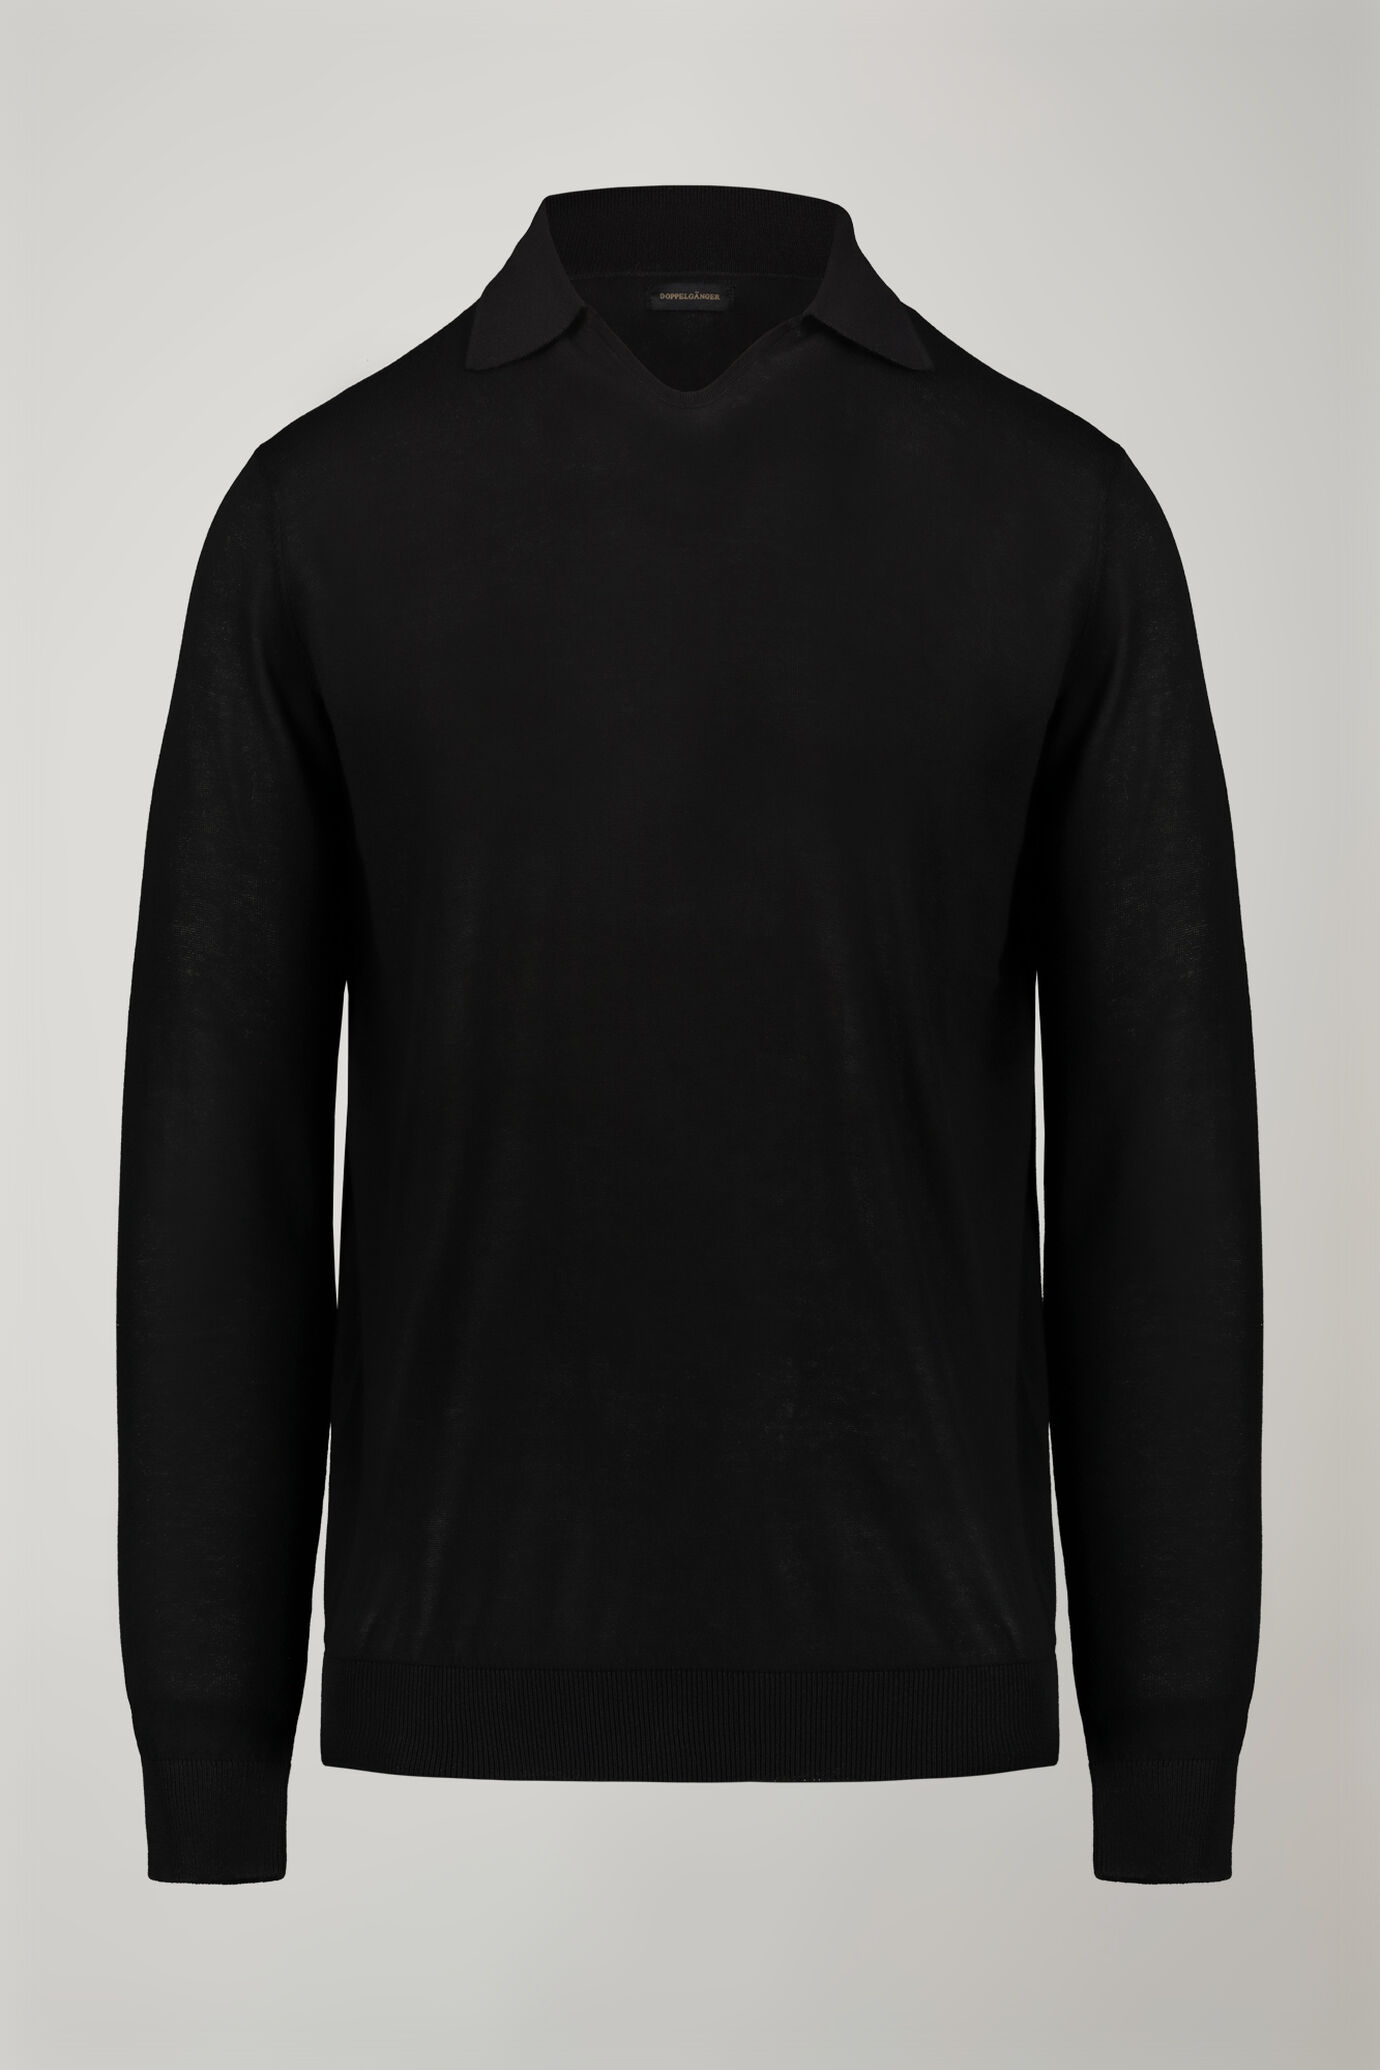 Herren-Poloshirt mit V-Ausschnitt aus 100 % Baumwollstrick und langen Ärmeln in normaler Passform image number 4